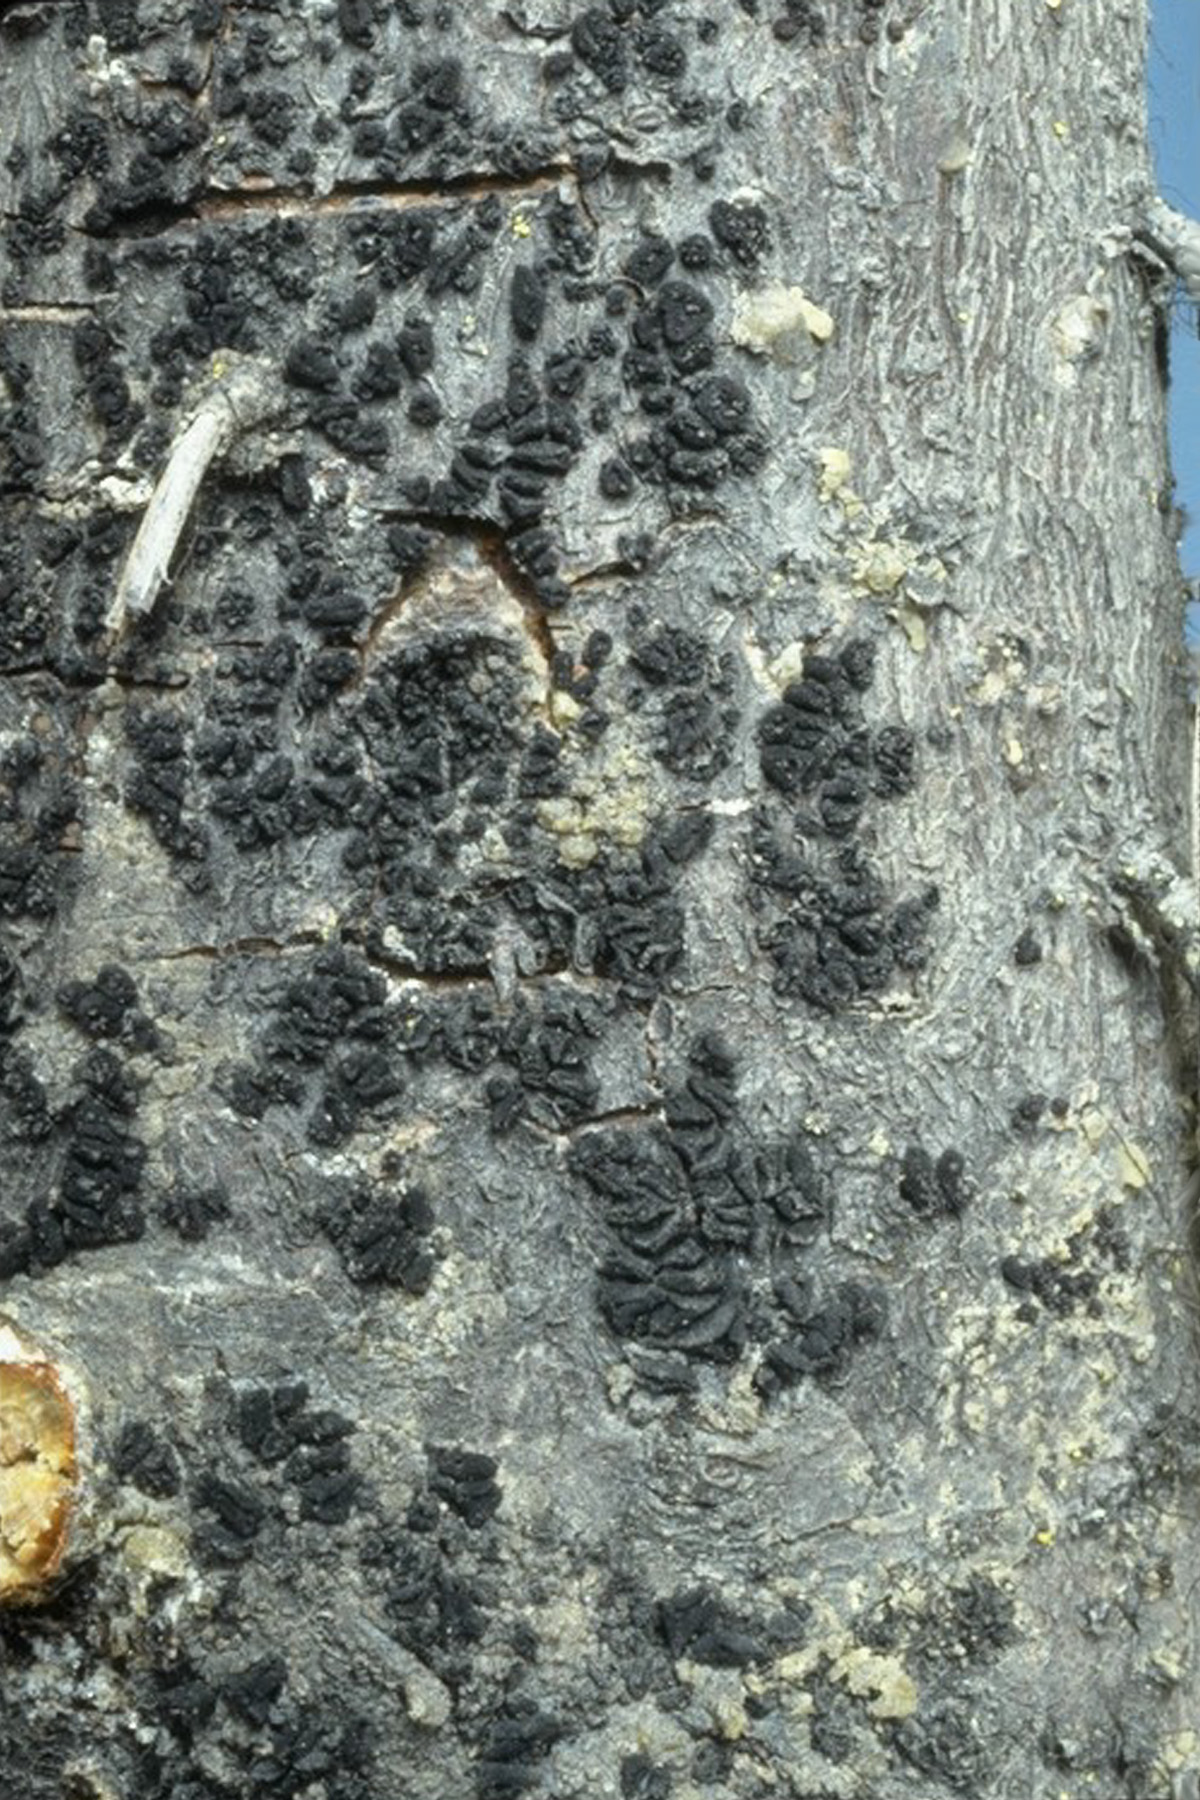 Fruiting bodies (apothecia) of Atropellis piniphila on lodgepole pine.